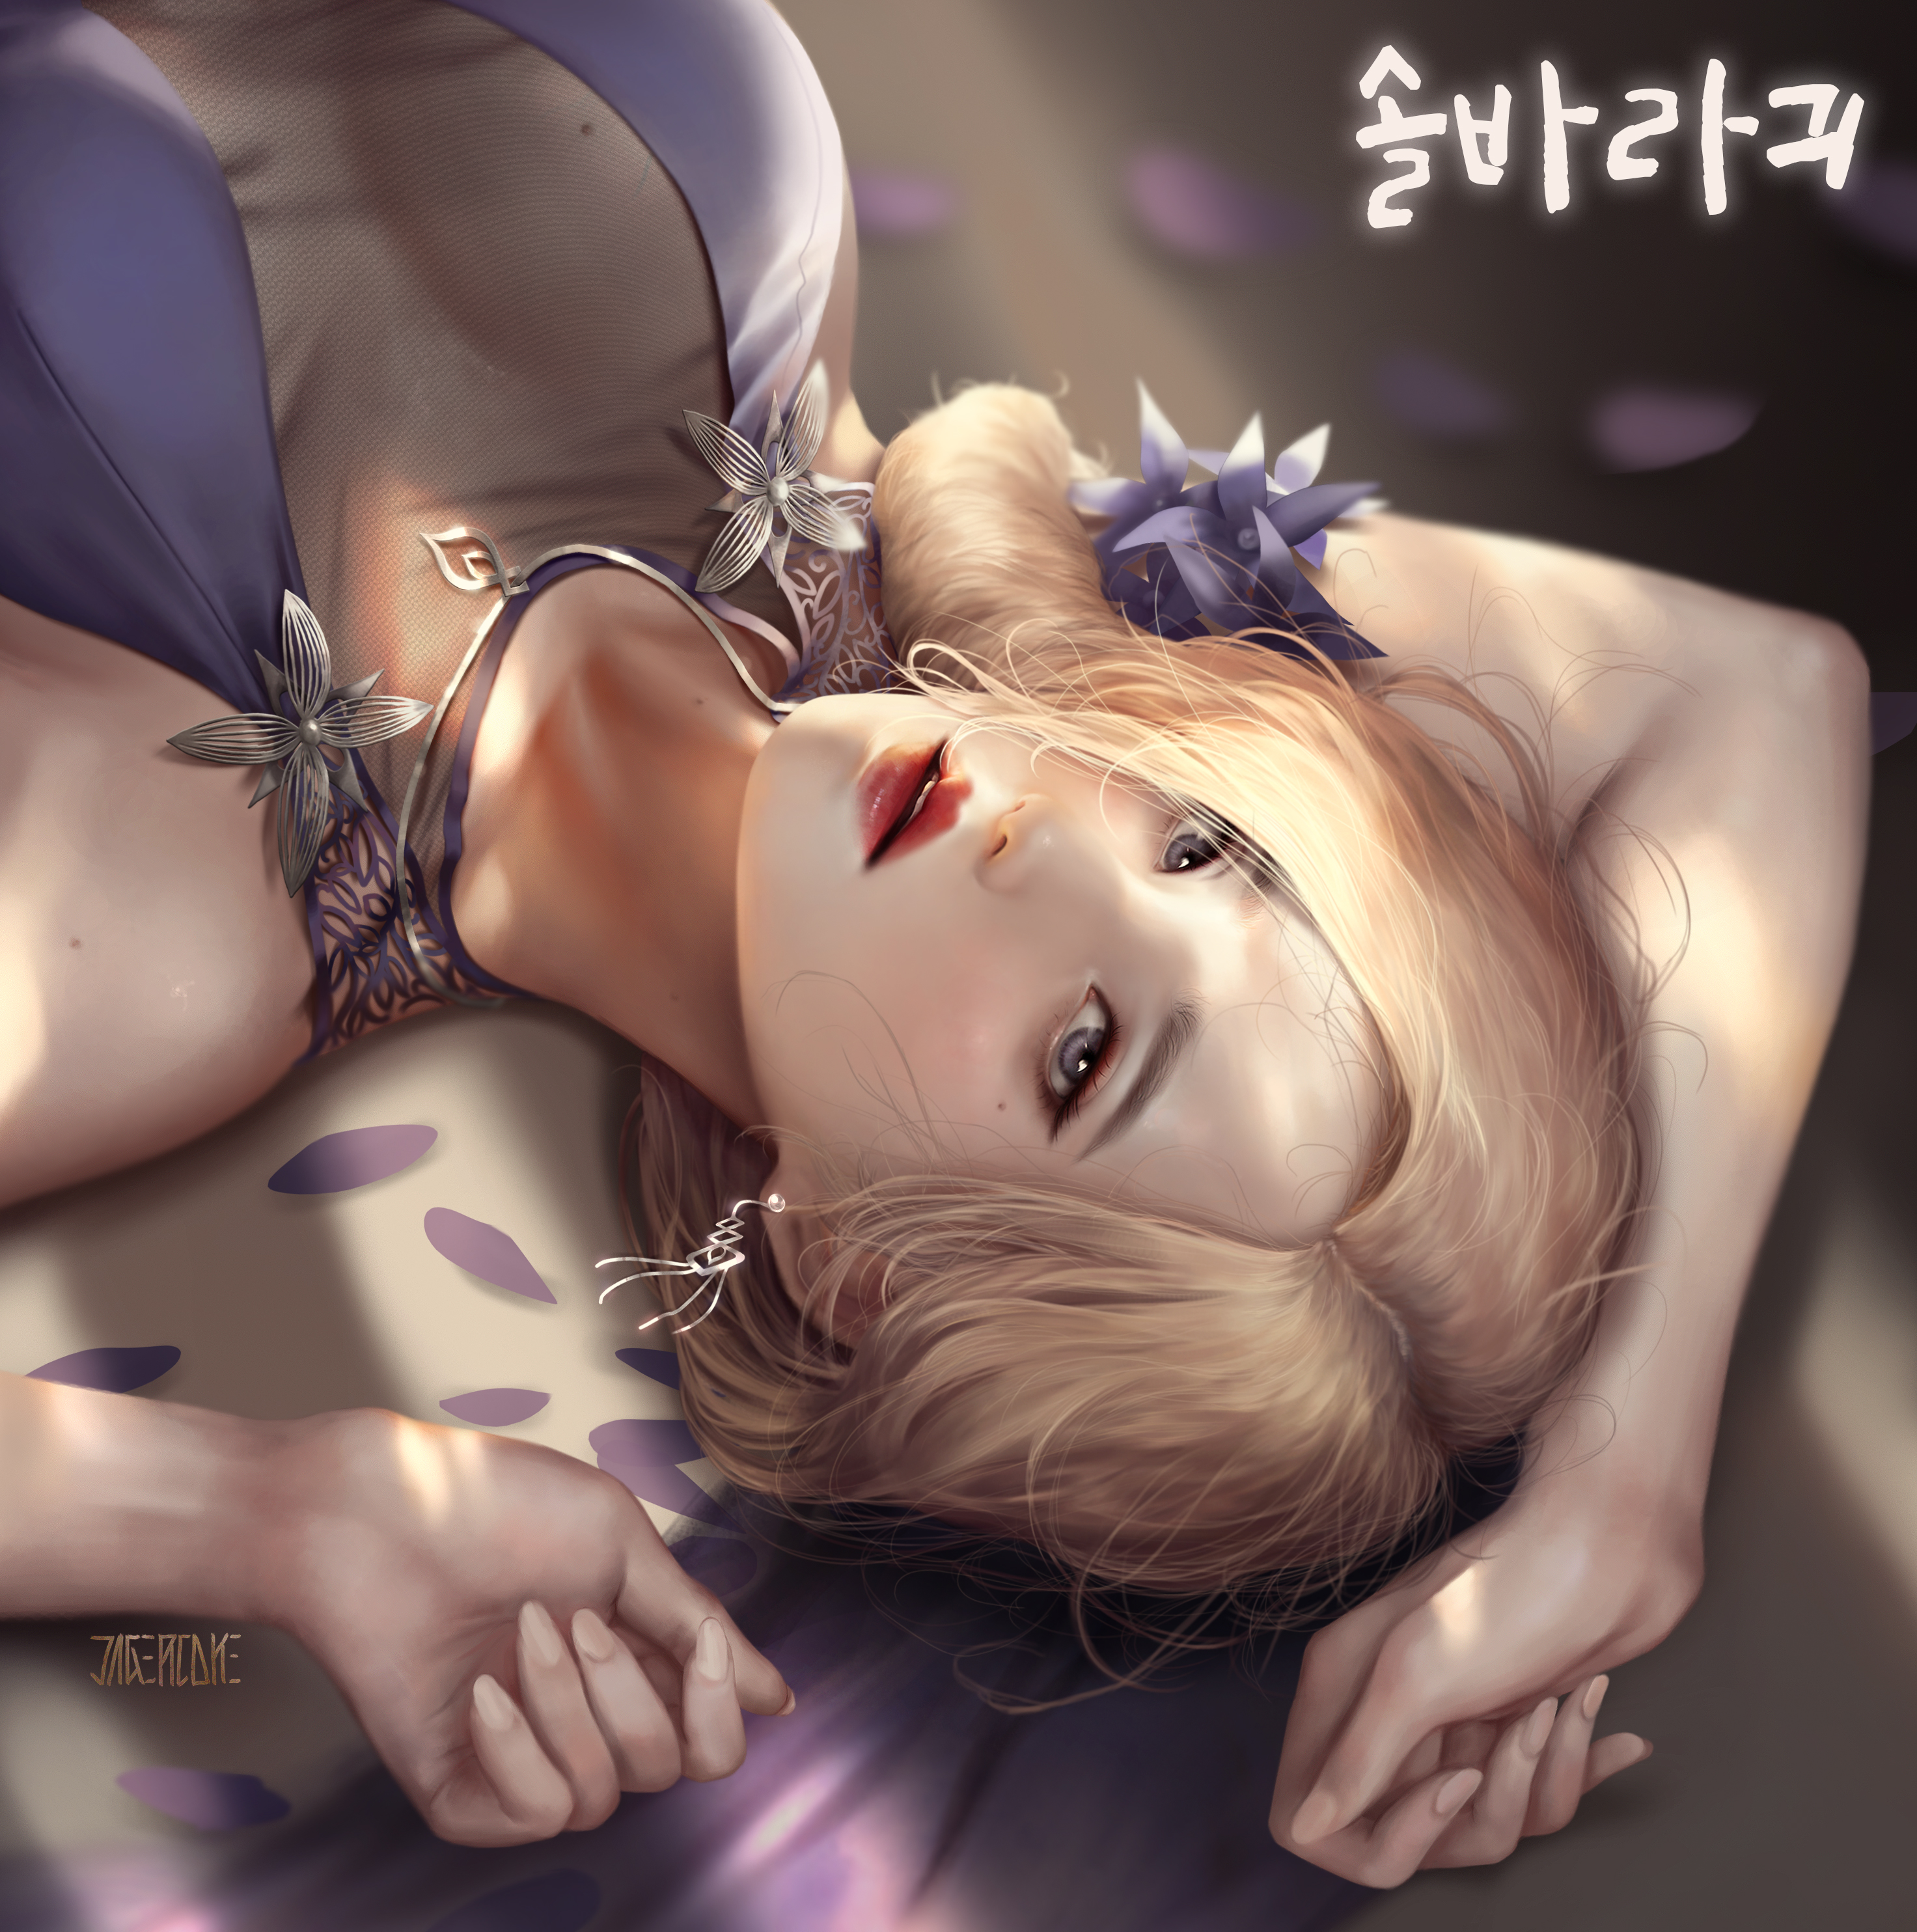 Fantasy Girl Painting Yong Jun Park Blonde Korean Petals 2945x2968